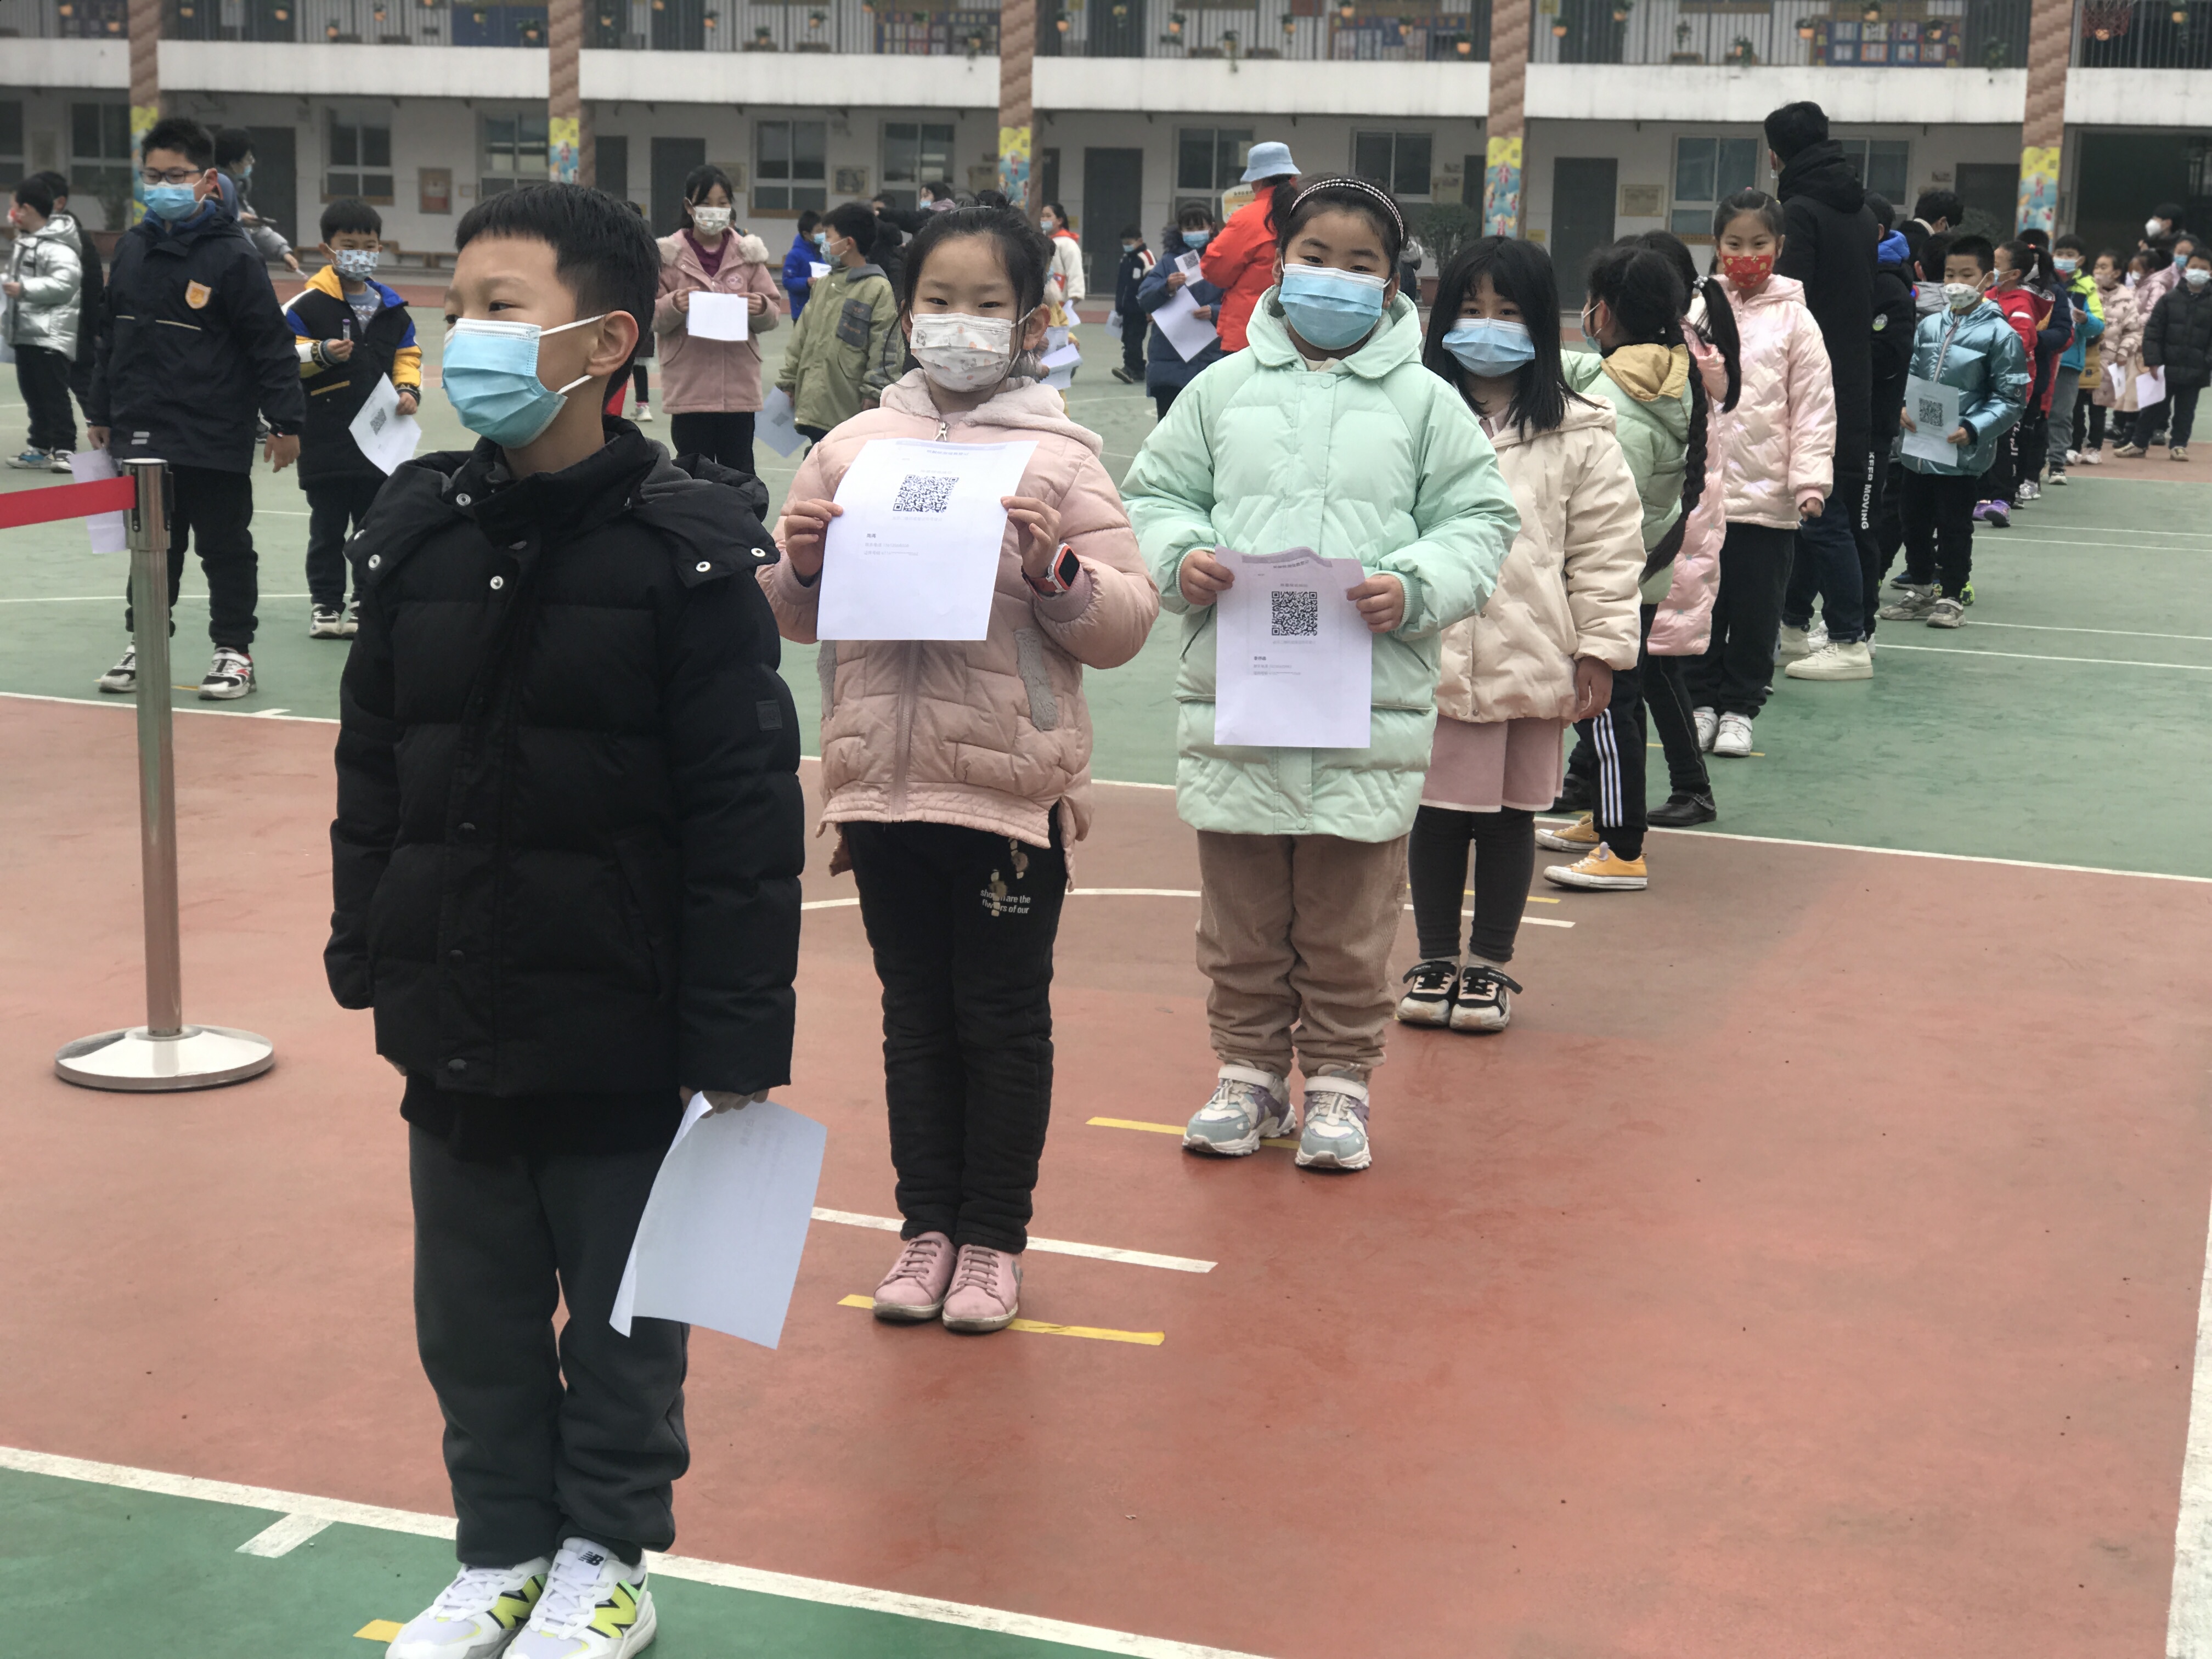 郑州市中小学幼儿园开启开学前第一轮全员核酸检测 包括全体师生、“三保”人员等